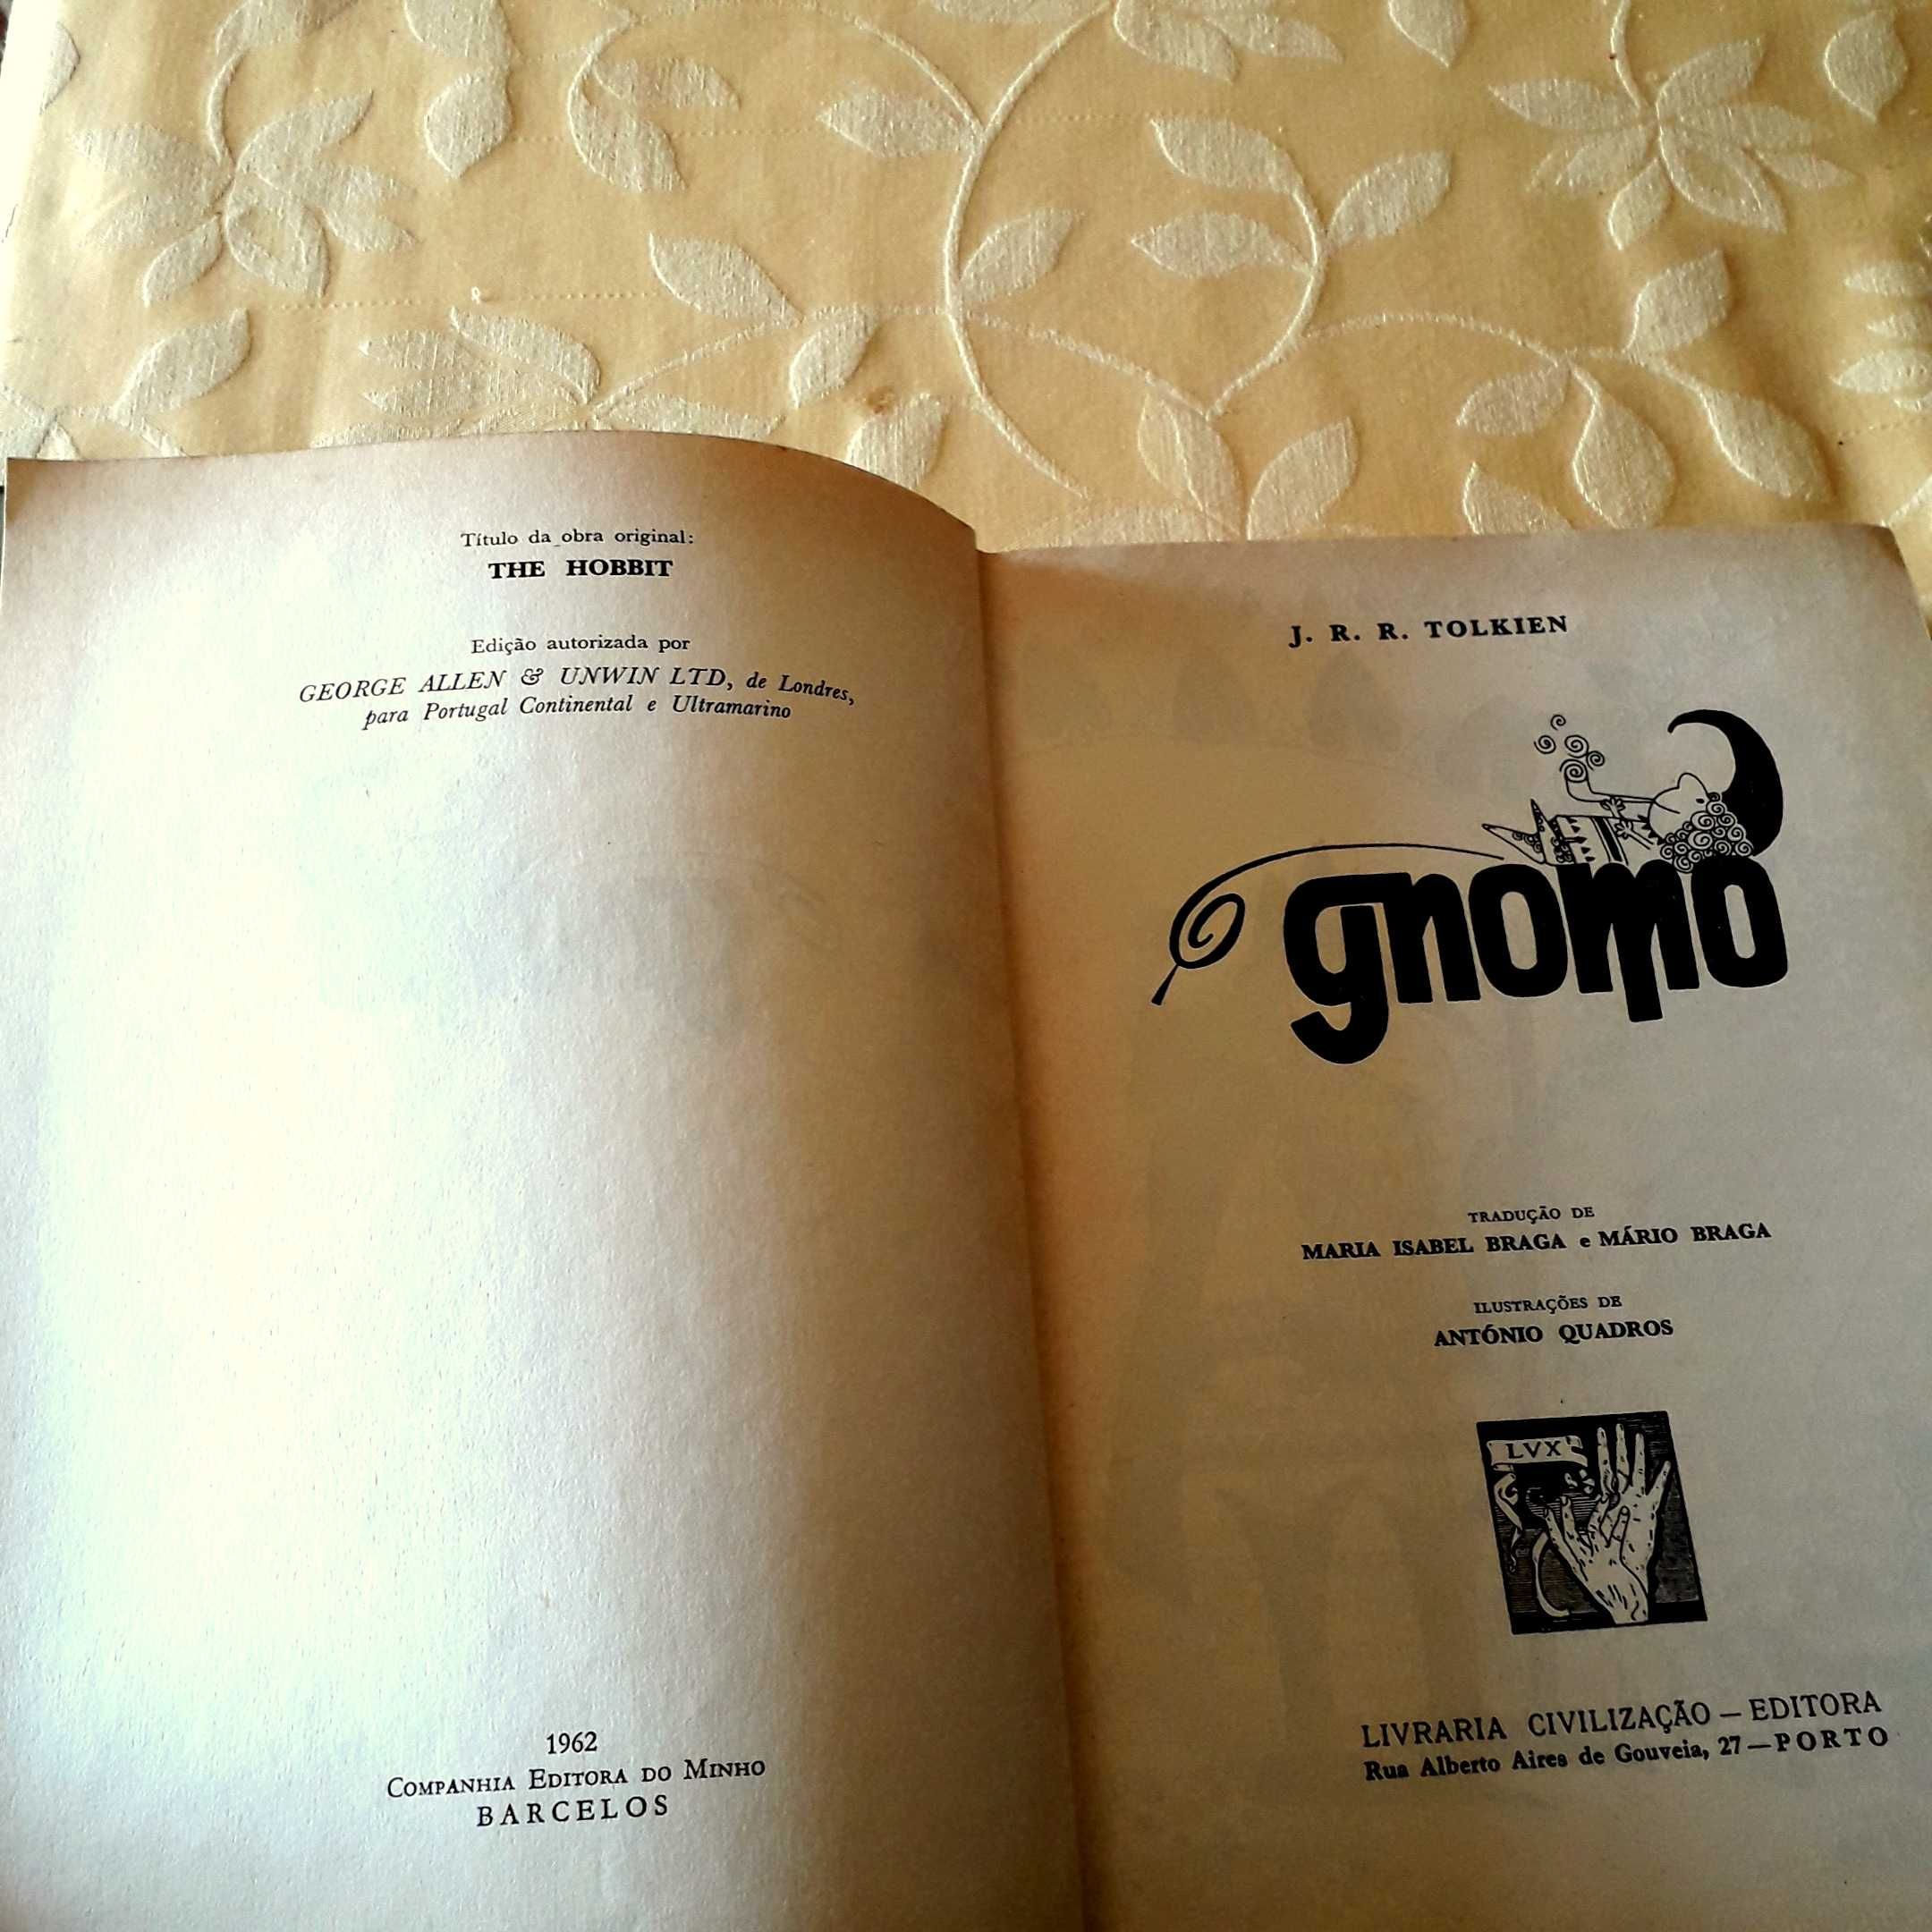 J R R Tolkien - O Gnomo ( 1.ª edição de "O Hobbit" em Portugal 1962)